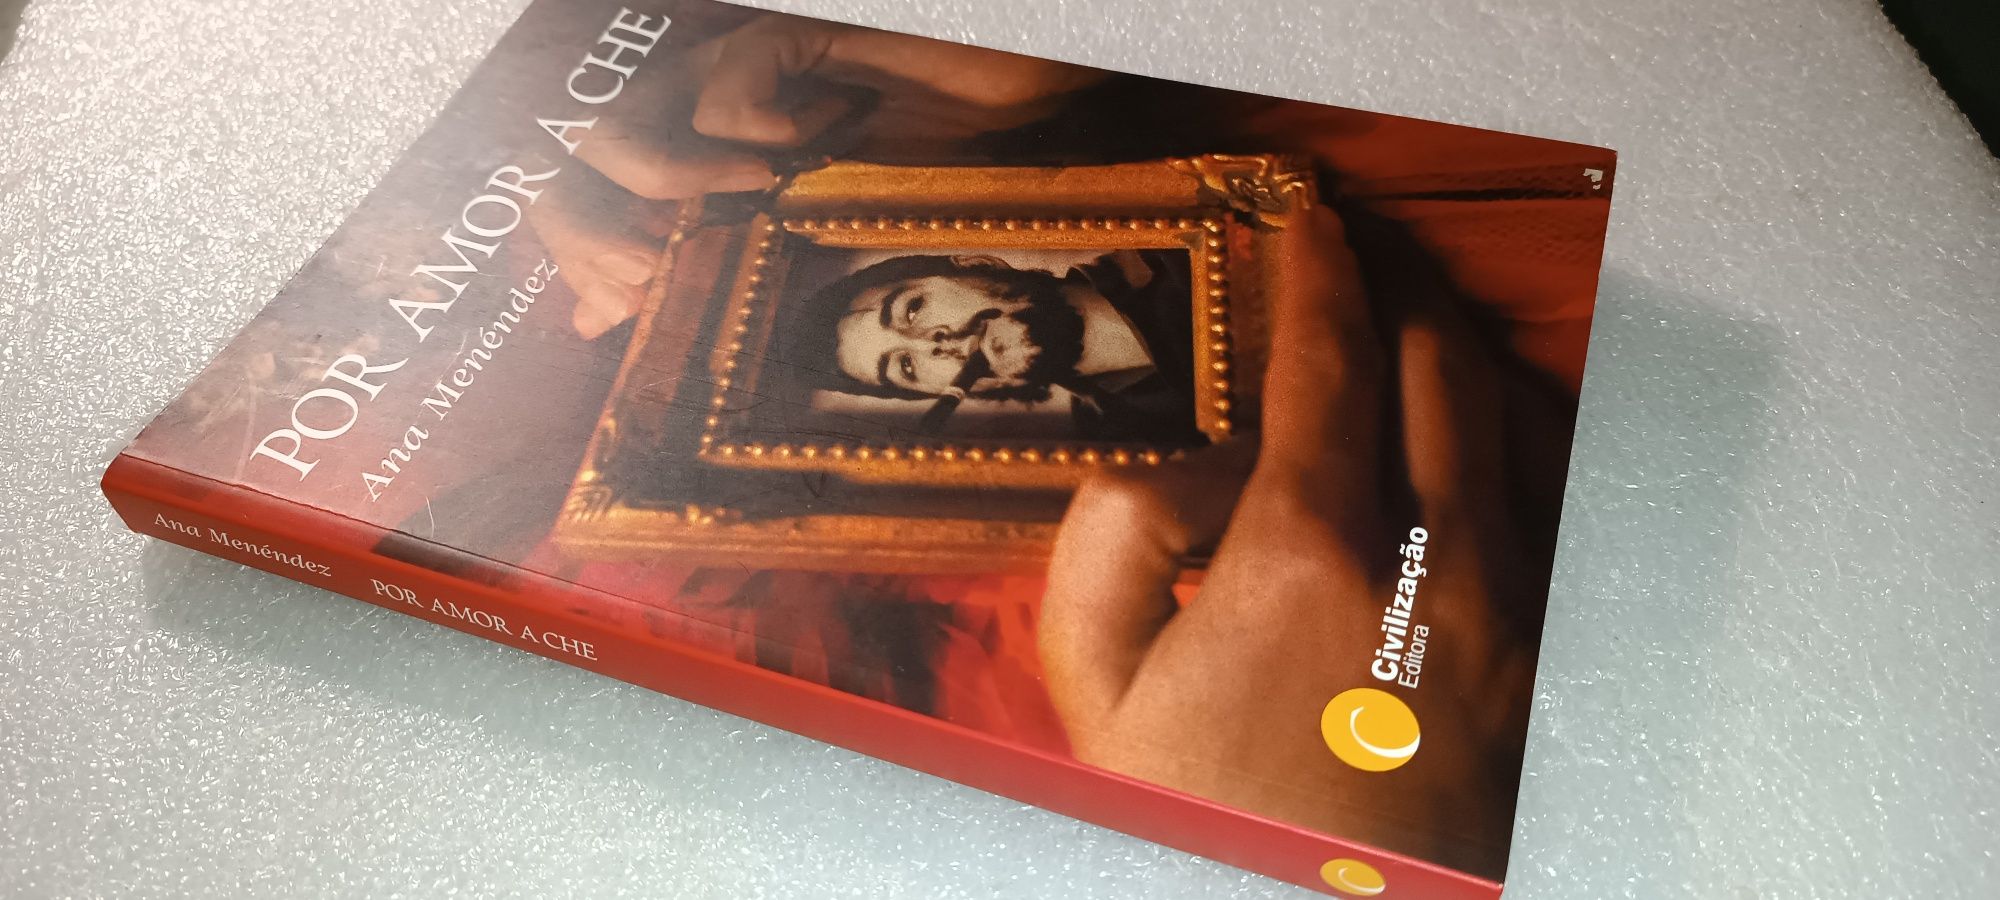 Livro Por Amor a Che, 2 edição portuguesa 2005